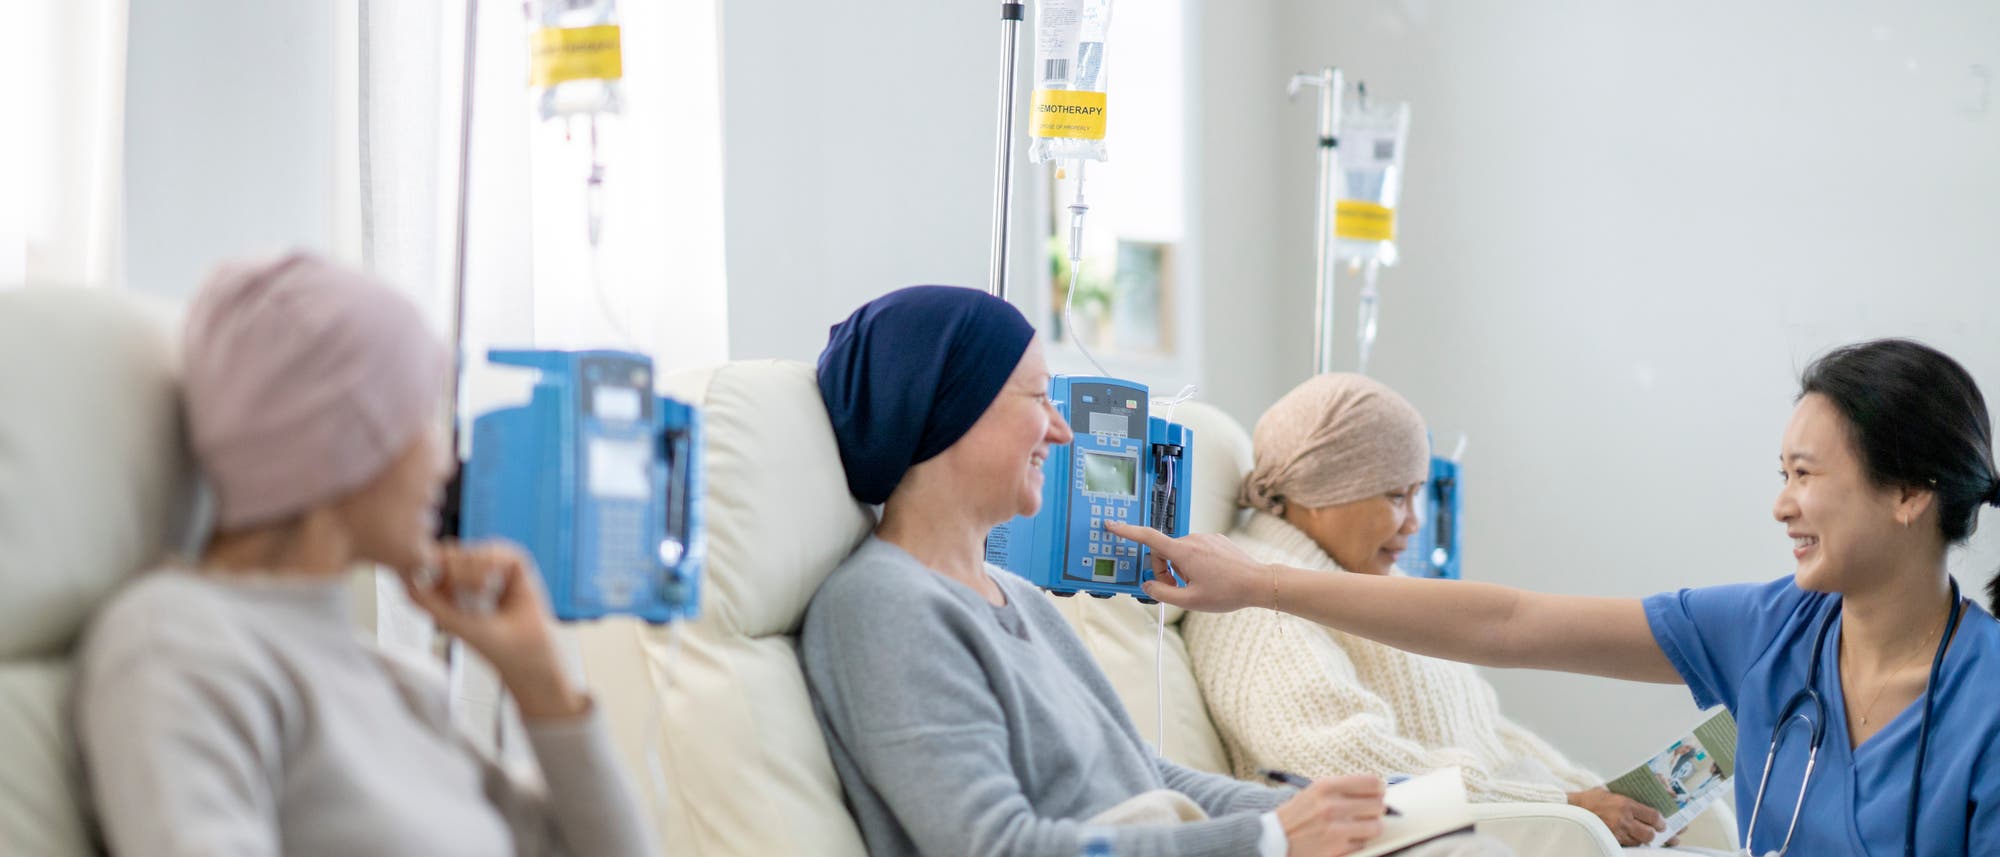 Krebspatientinnen sitzen nebeneinander bekommen über eine Infusion Medikamente